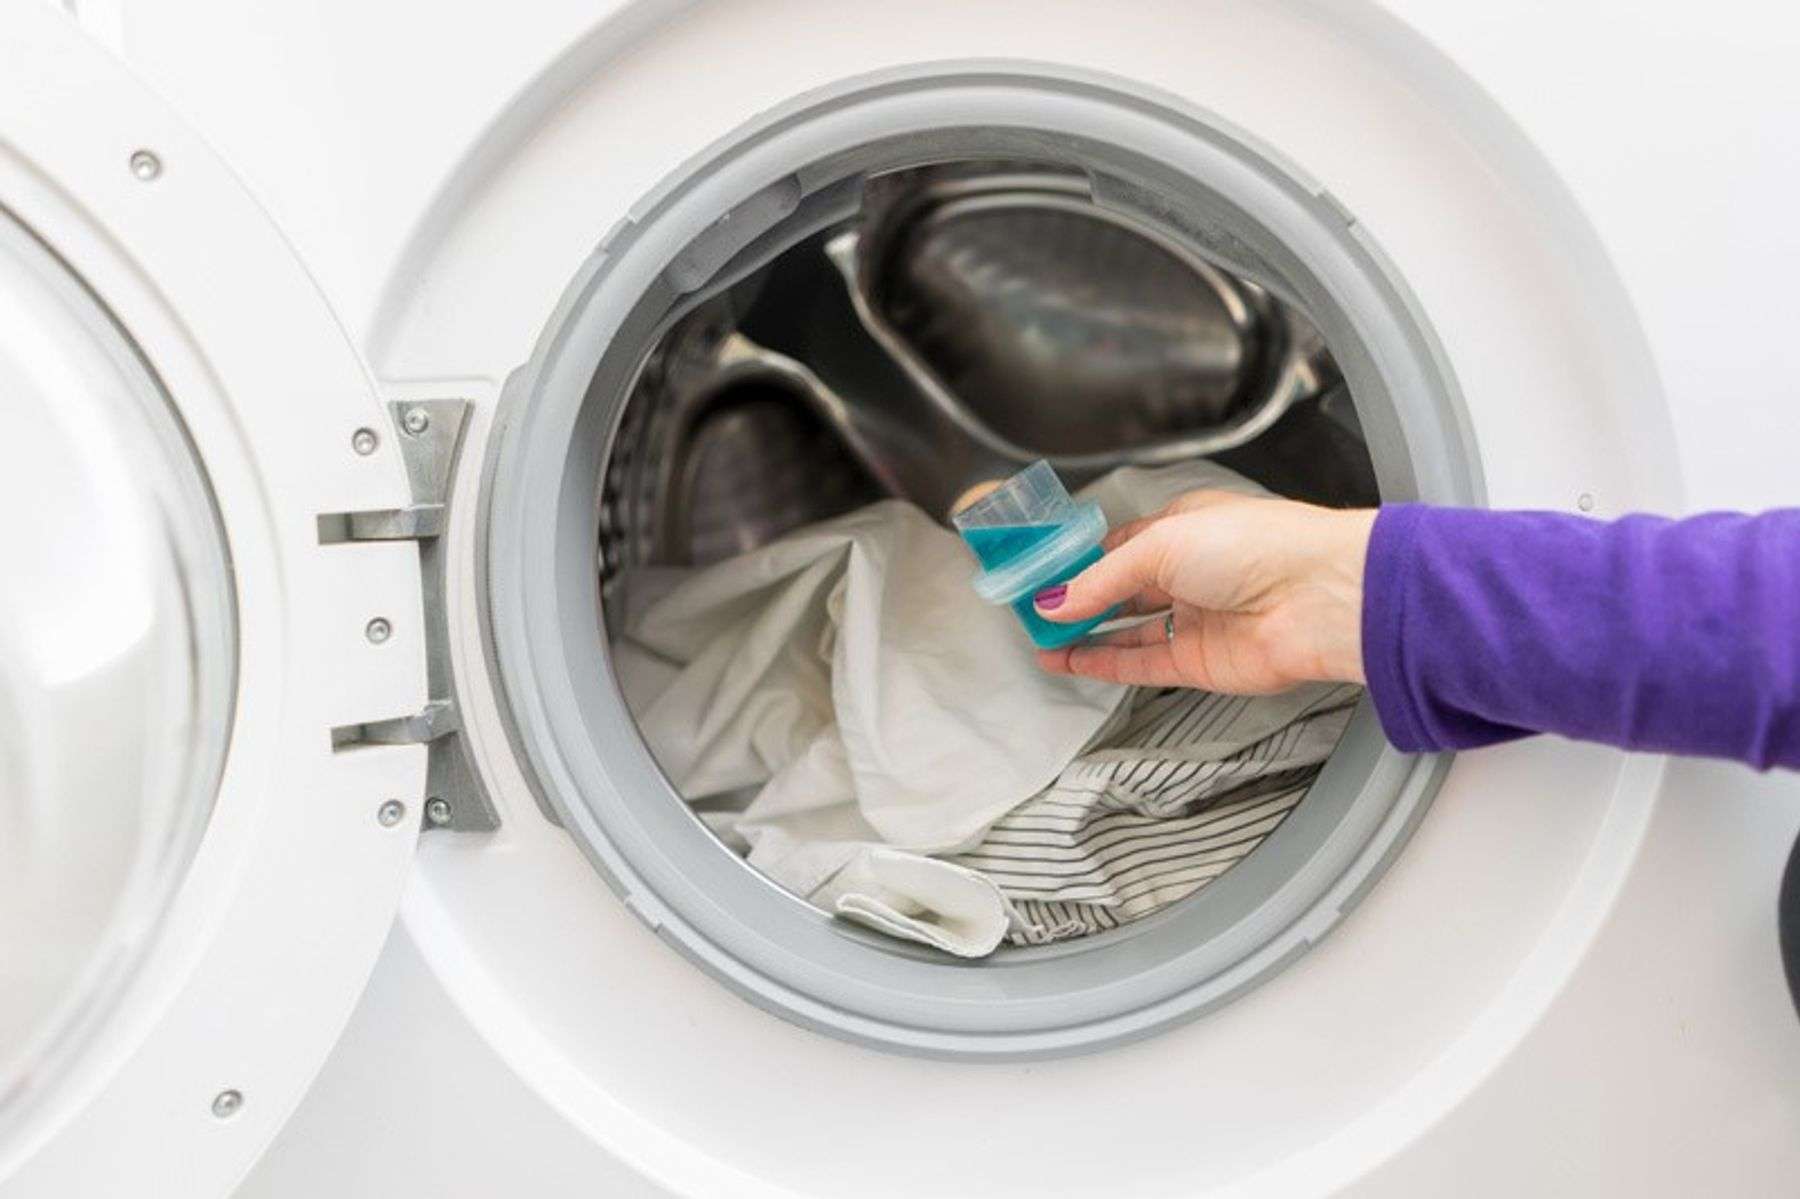 Có thể sử dụng chung nước giặt cho 2 loại máy giặt không?